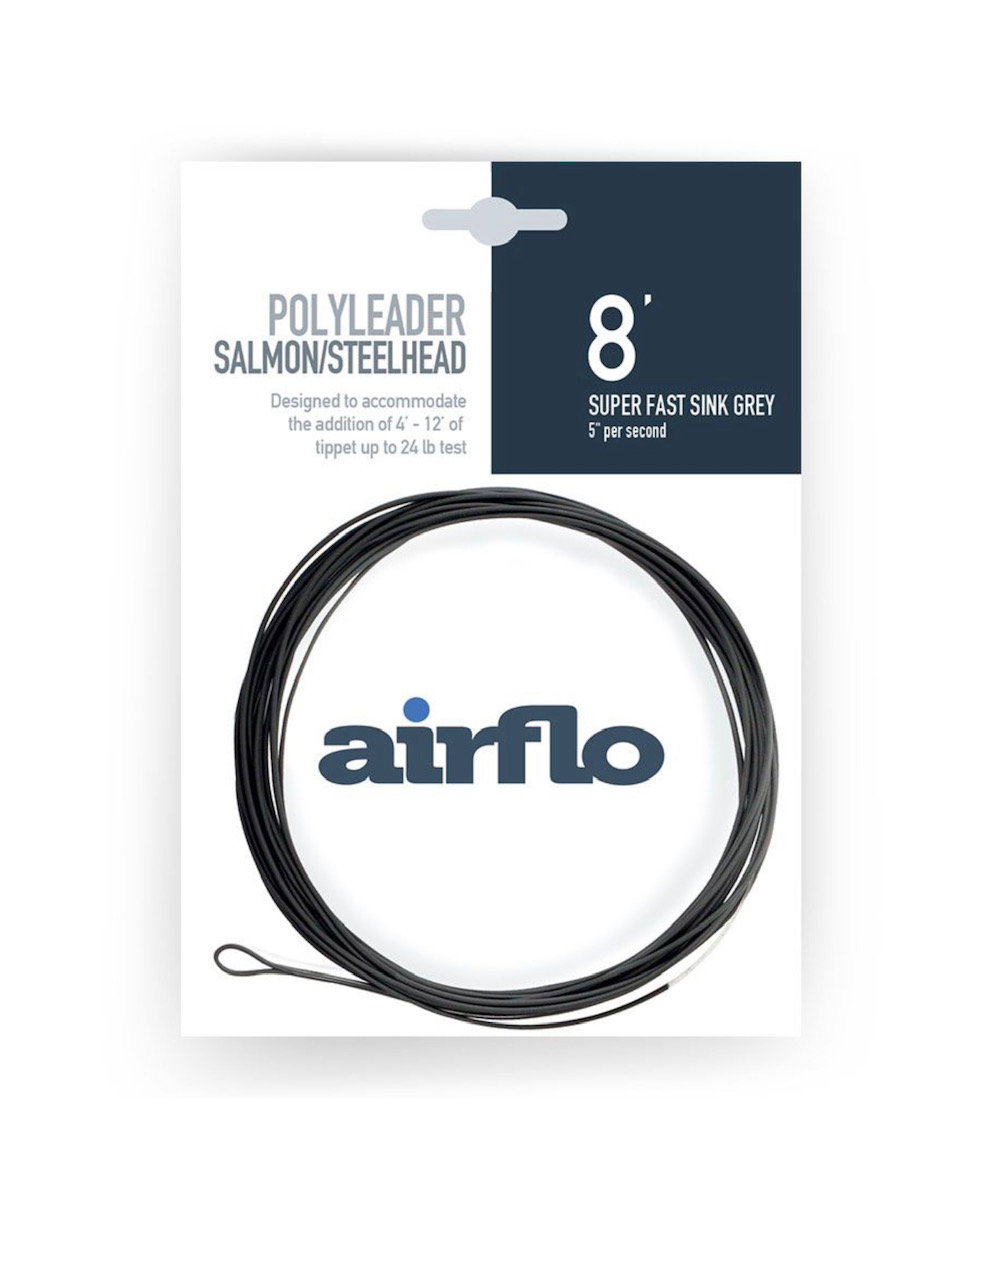 Airflo Polyleader Salmon/Steelhead  - 5' - Slow Sink Green (2ips)